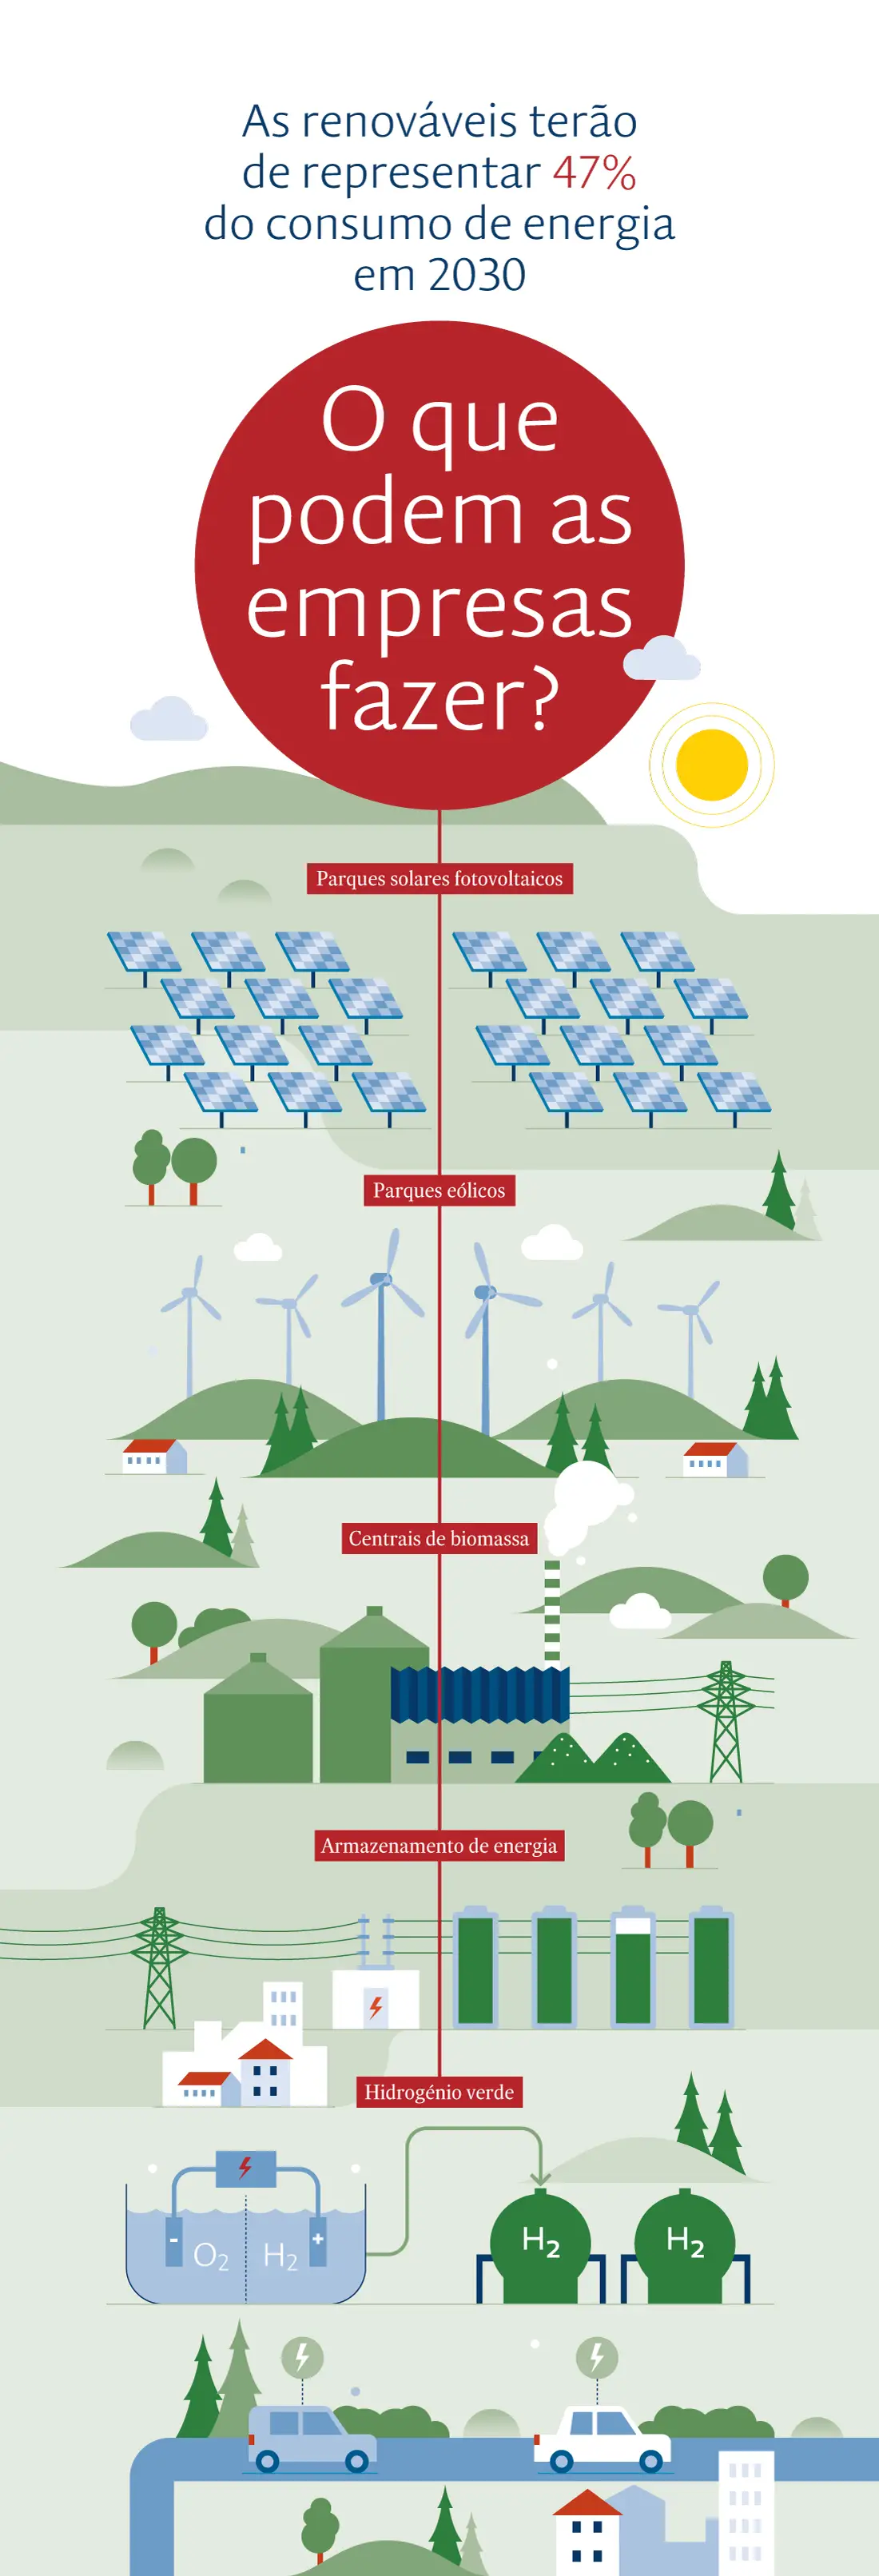 Como aderir e poupar com as energias renováveis